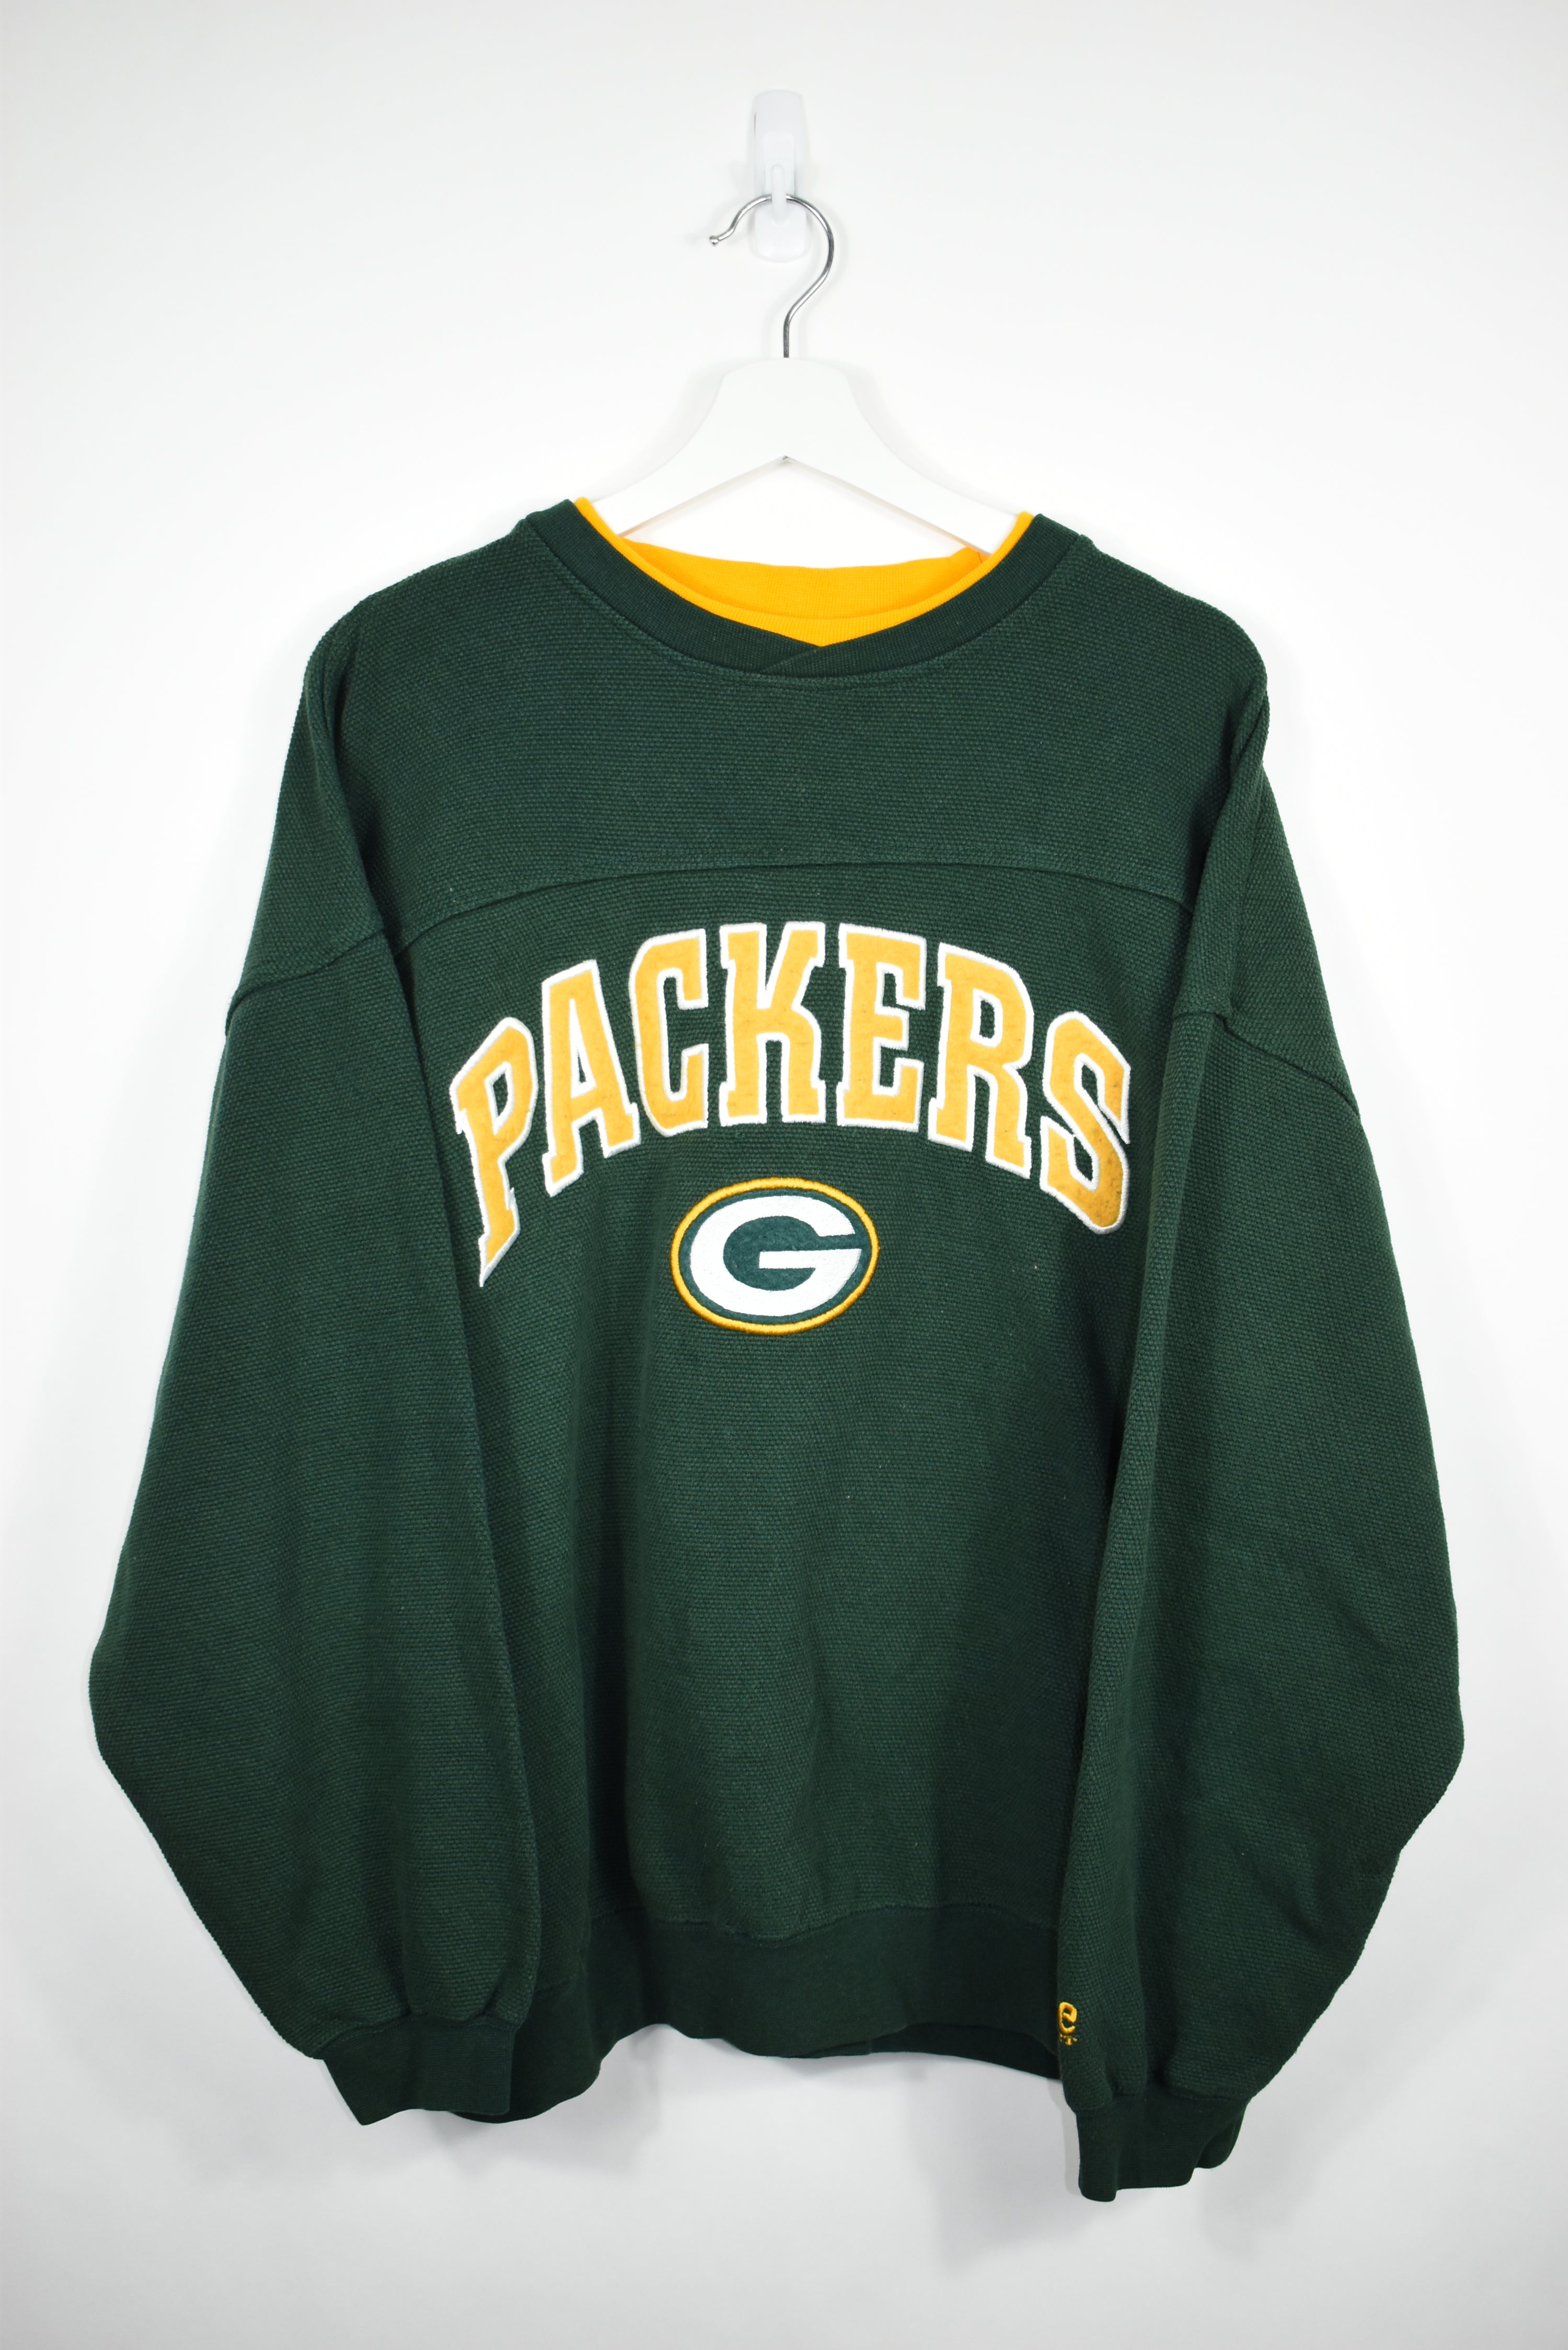 Vintage Lee Sport Packers Embroidery Sweatshirt Xlarge